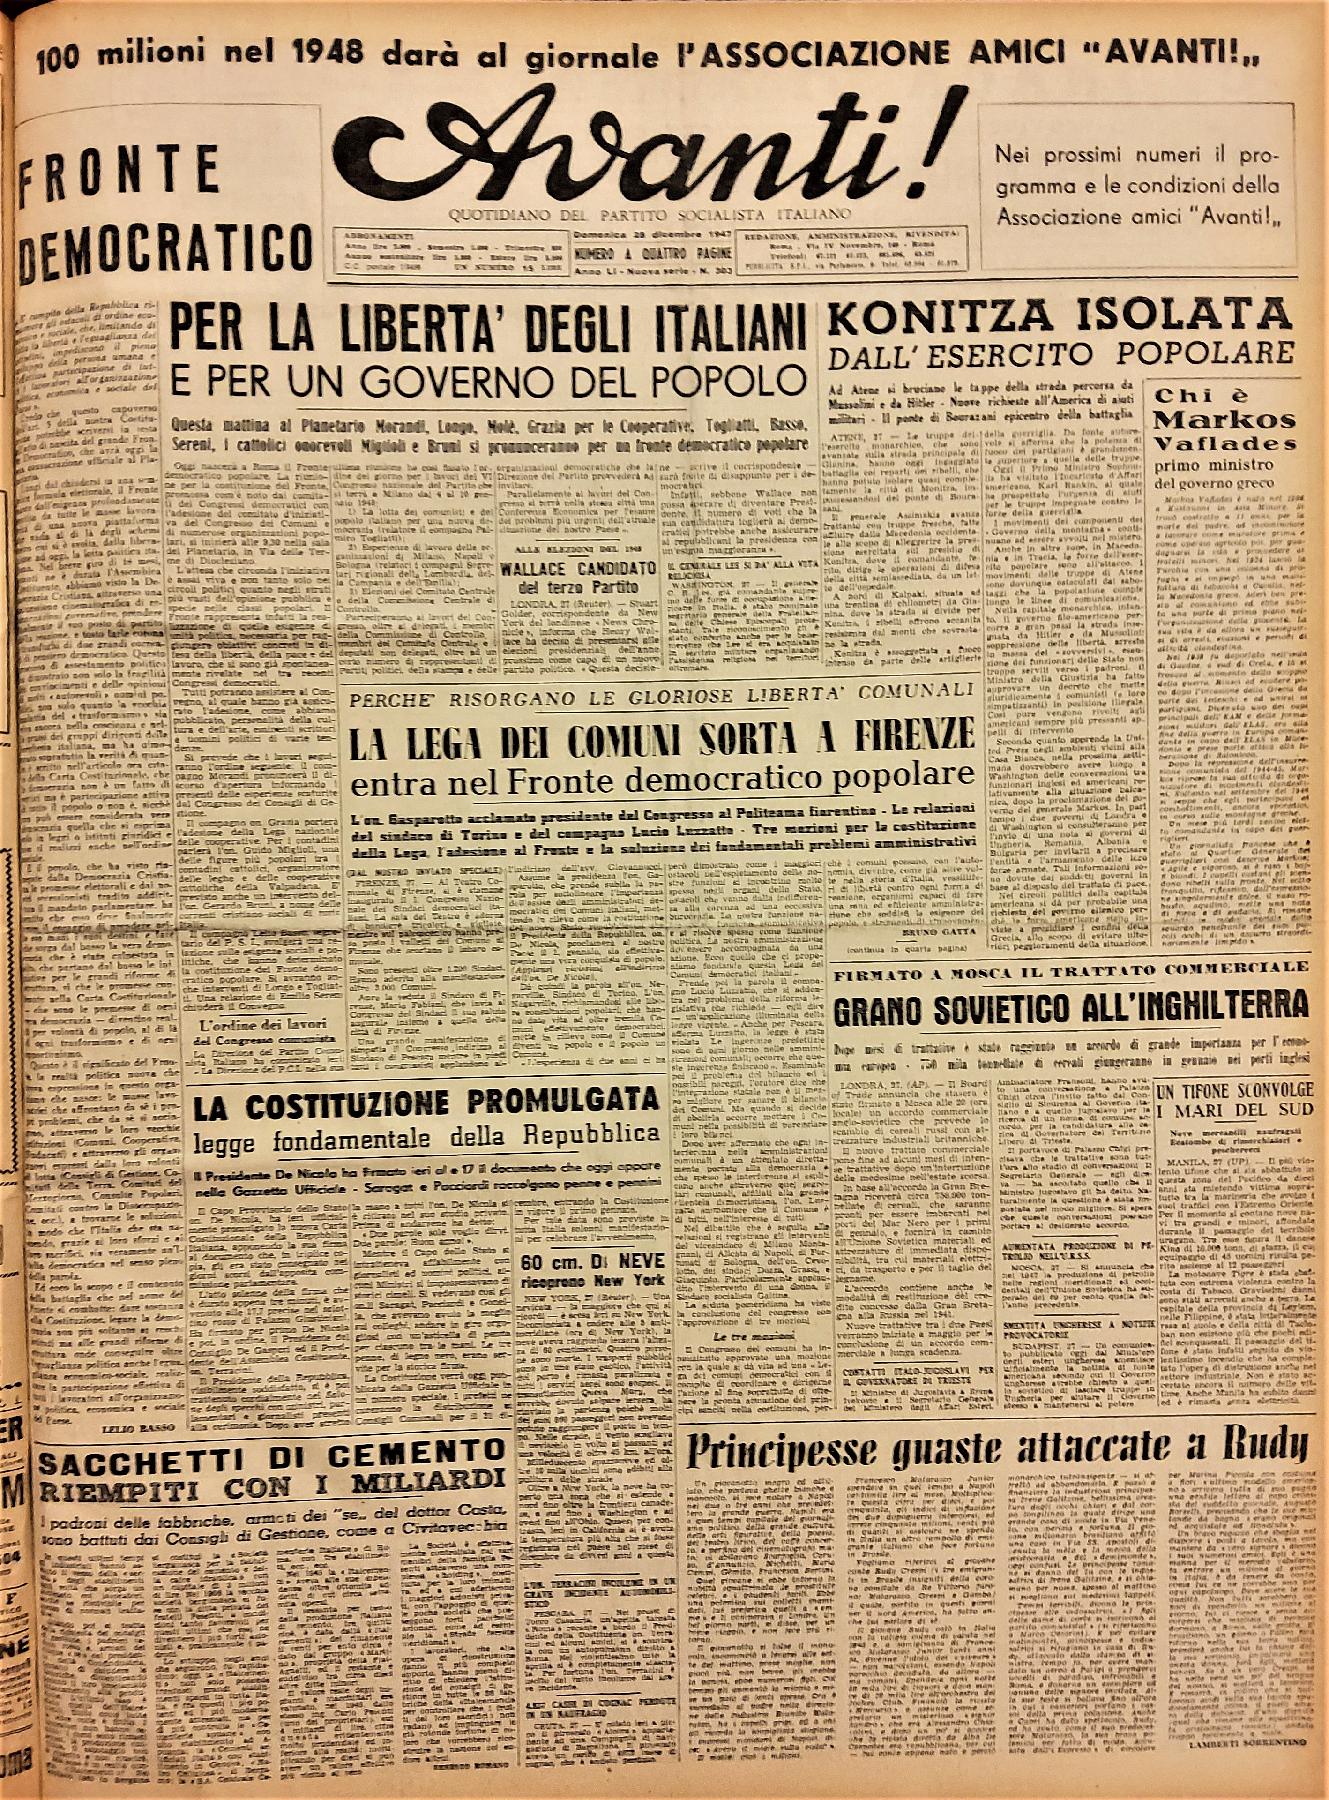 28 dicembre 1947 - Prima pagina del quotidiano "Avanti!"